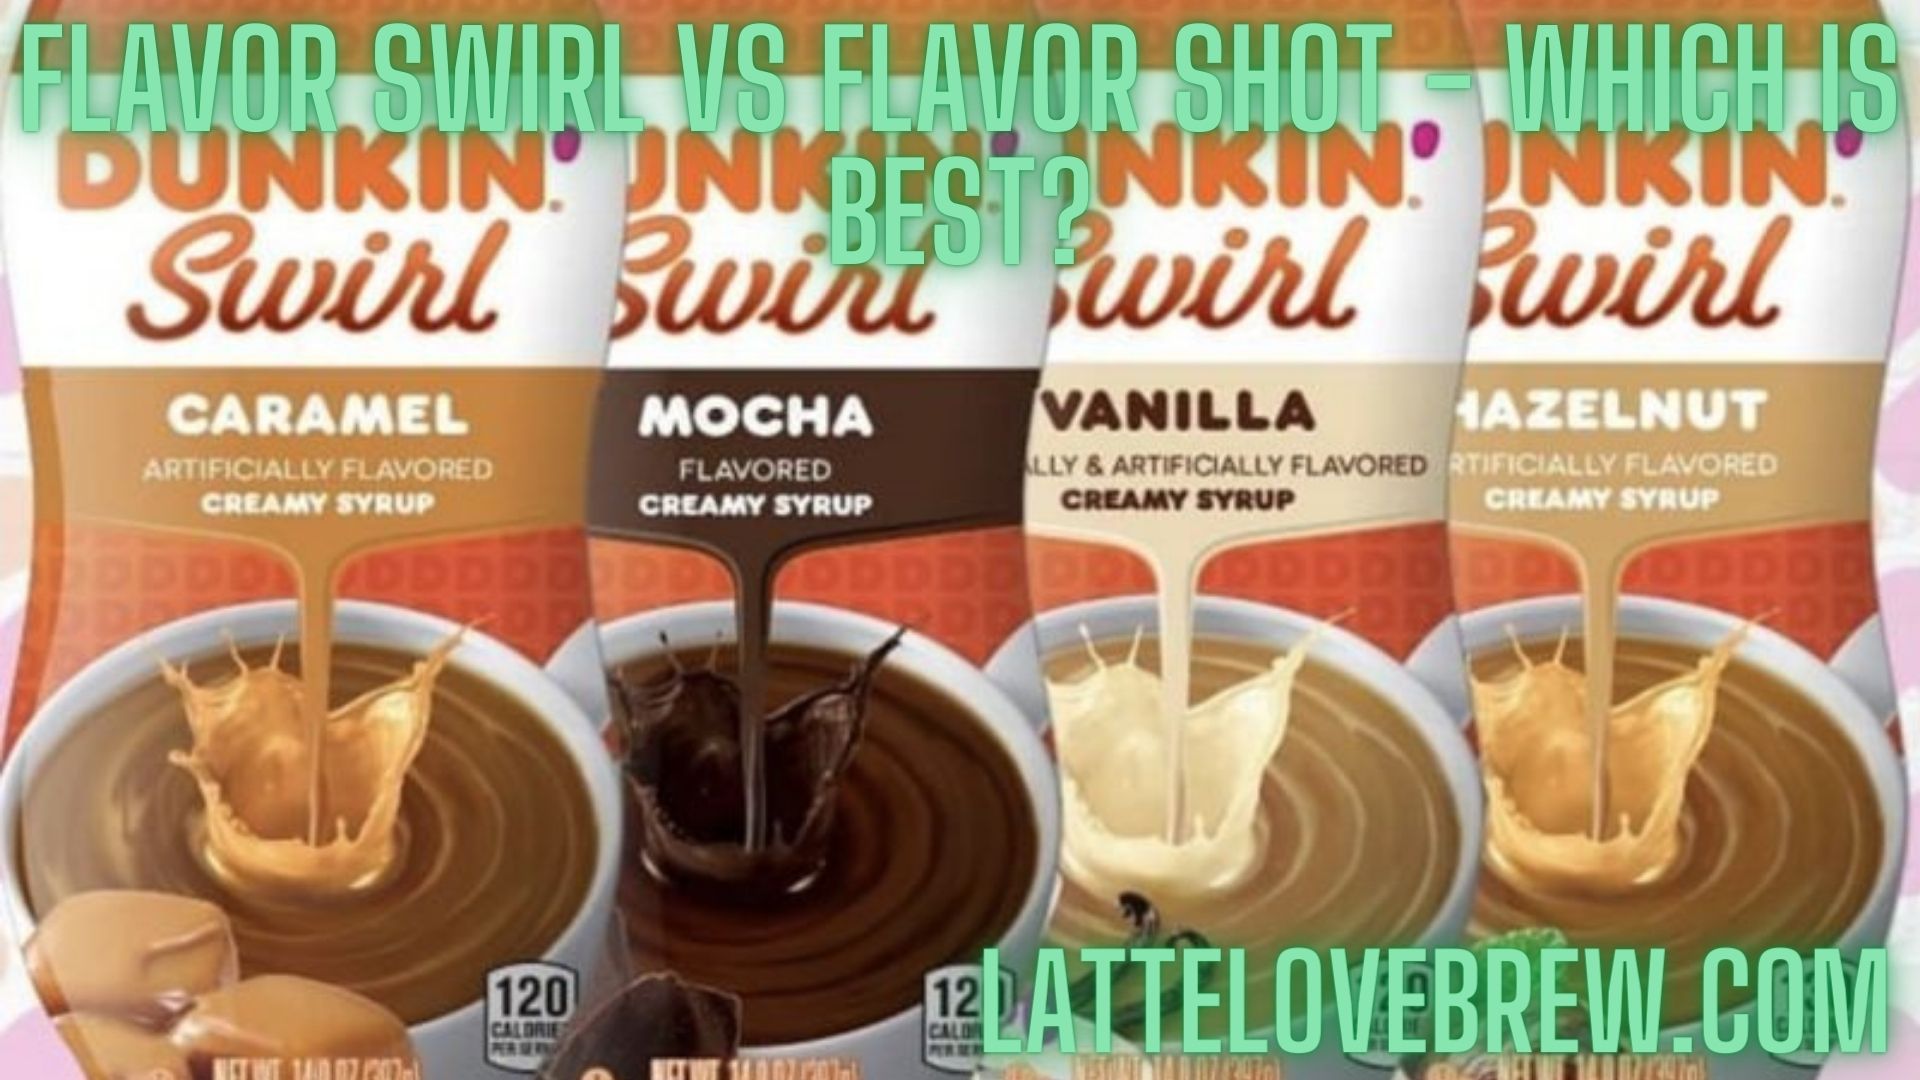 Flavor Swirl Vs Flavor Shot - Which Is Best? - Latte Love Brew